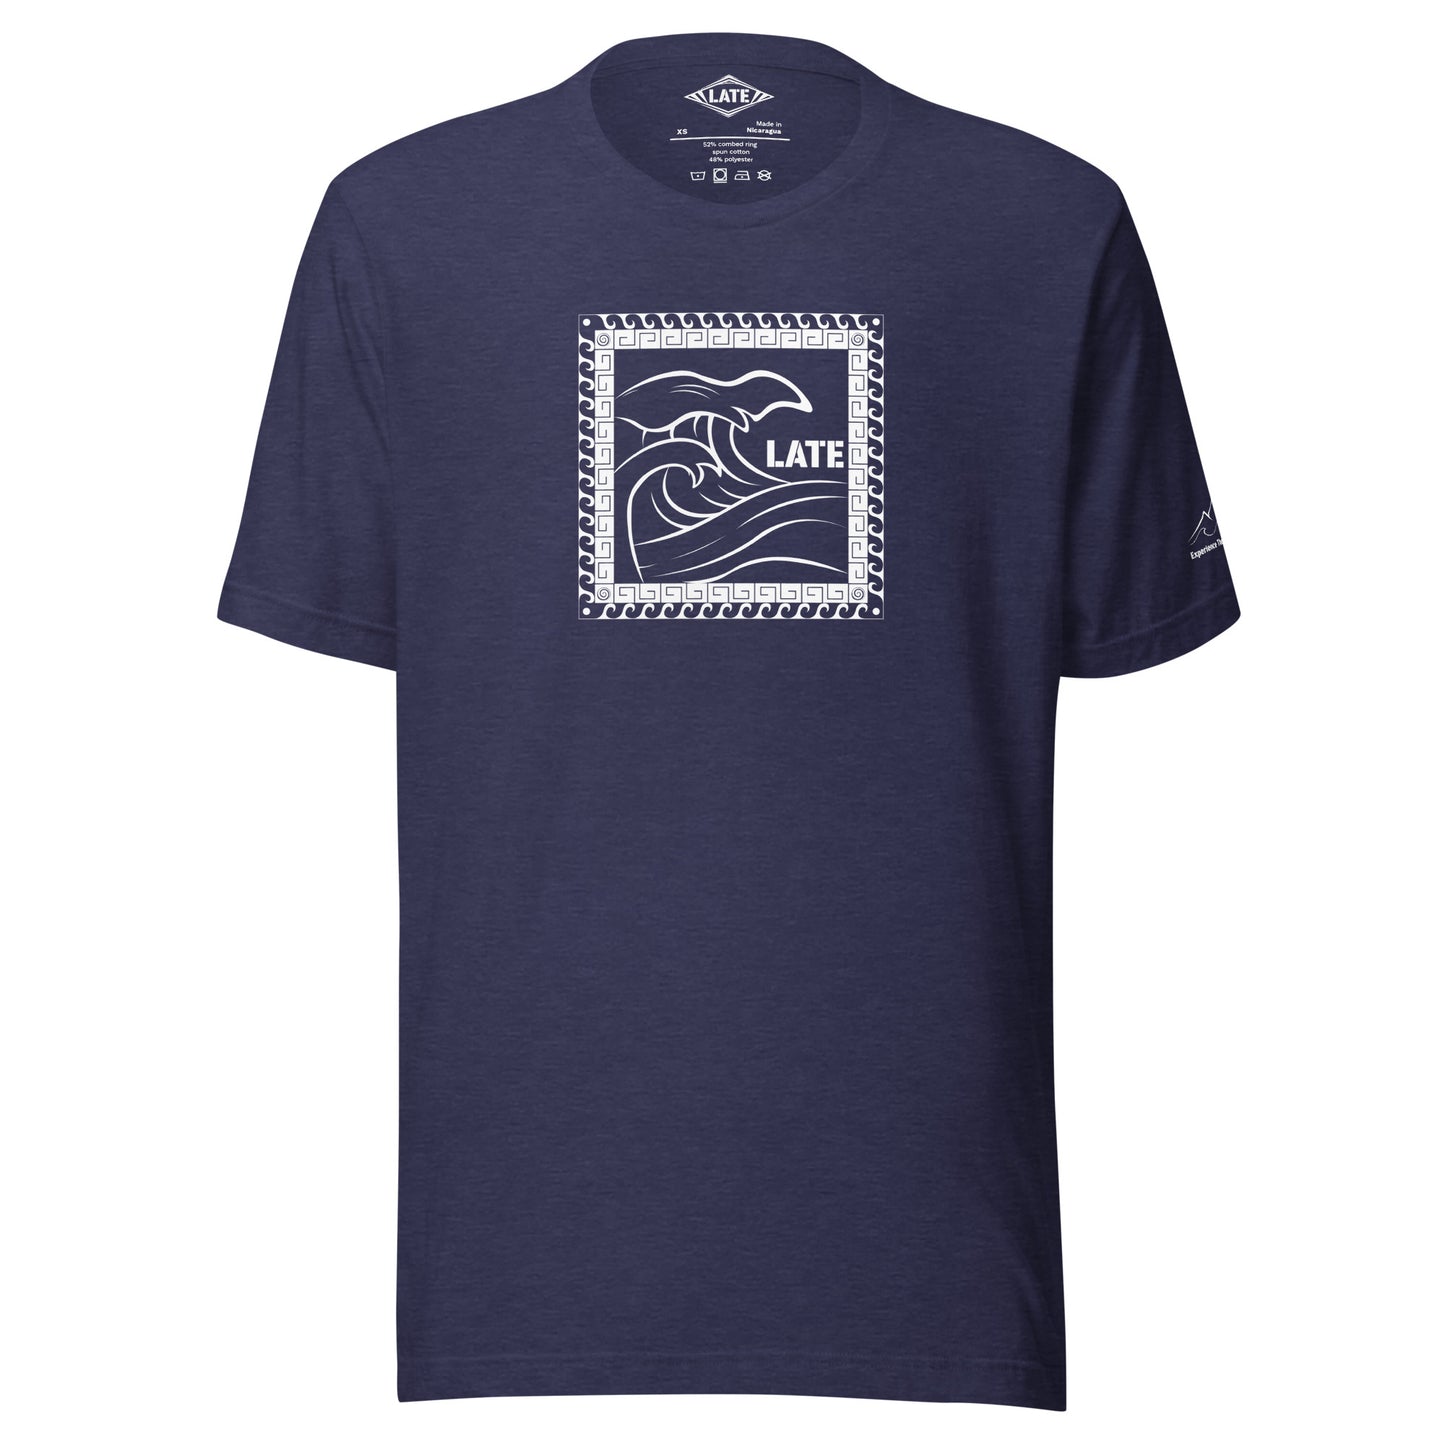 T-Shirt Tricky Wave design vague japonnaise et contour maori texte Late marque de vetement de surf. Tshirt unisex couleur bleu nuit